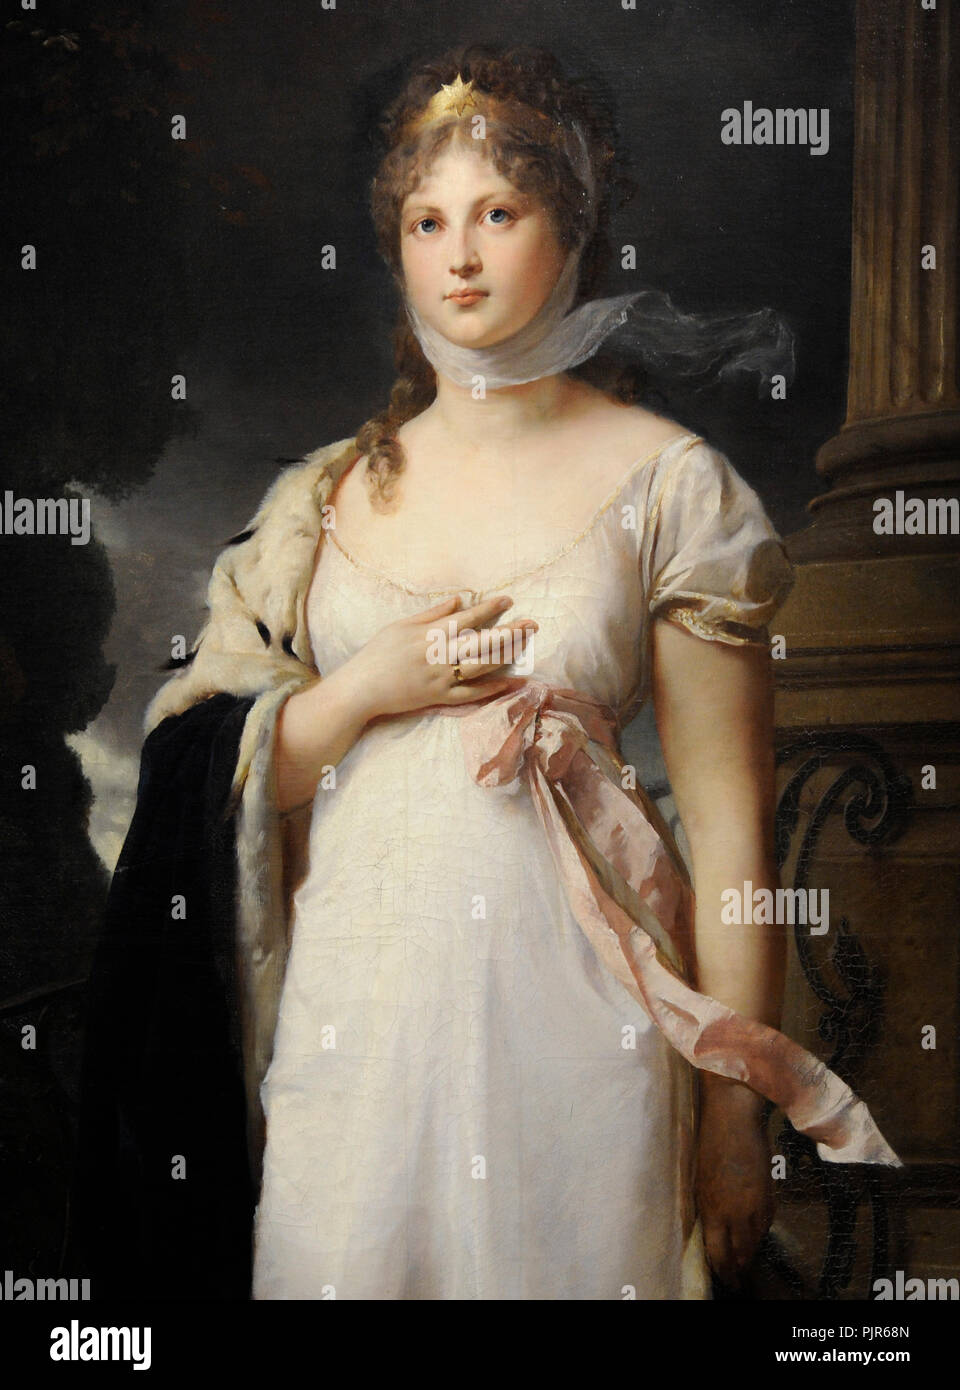 Königin Louise von Preußen (1776-1810). Porträt von Gustav Richter (1823-1884), 1879. Detail. Wallraf-Richartz-Museum. Köln. Deutschland. Stockfoto